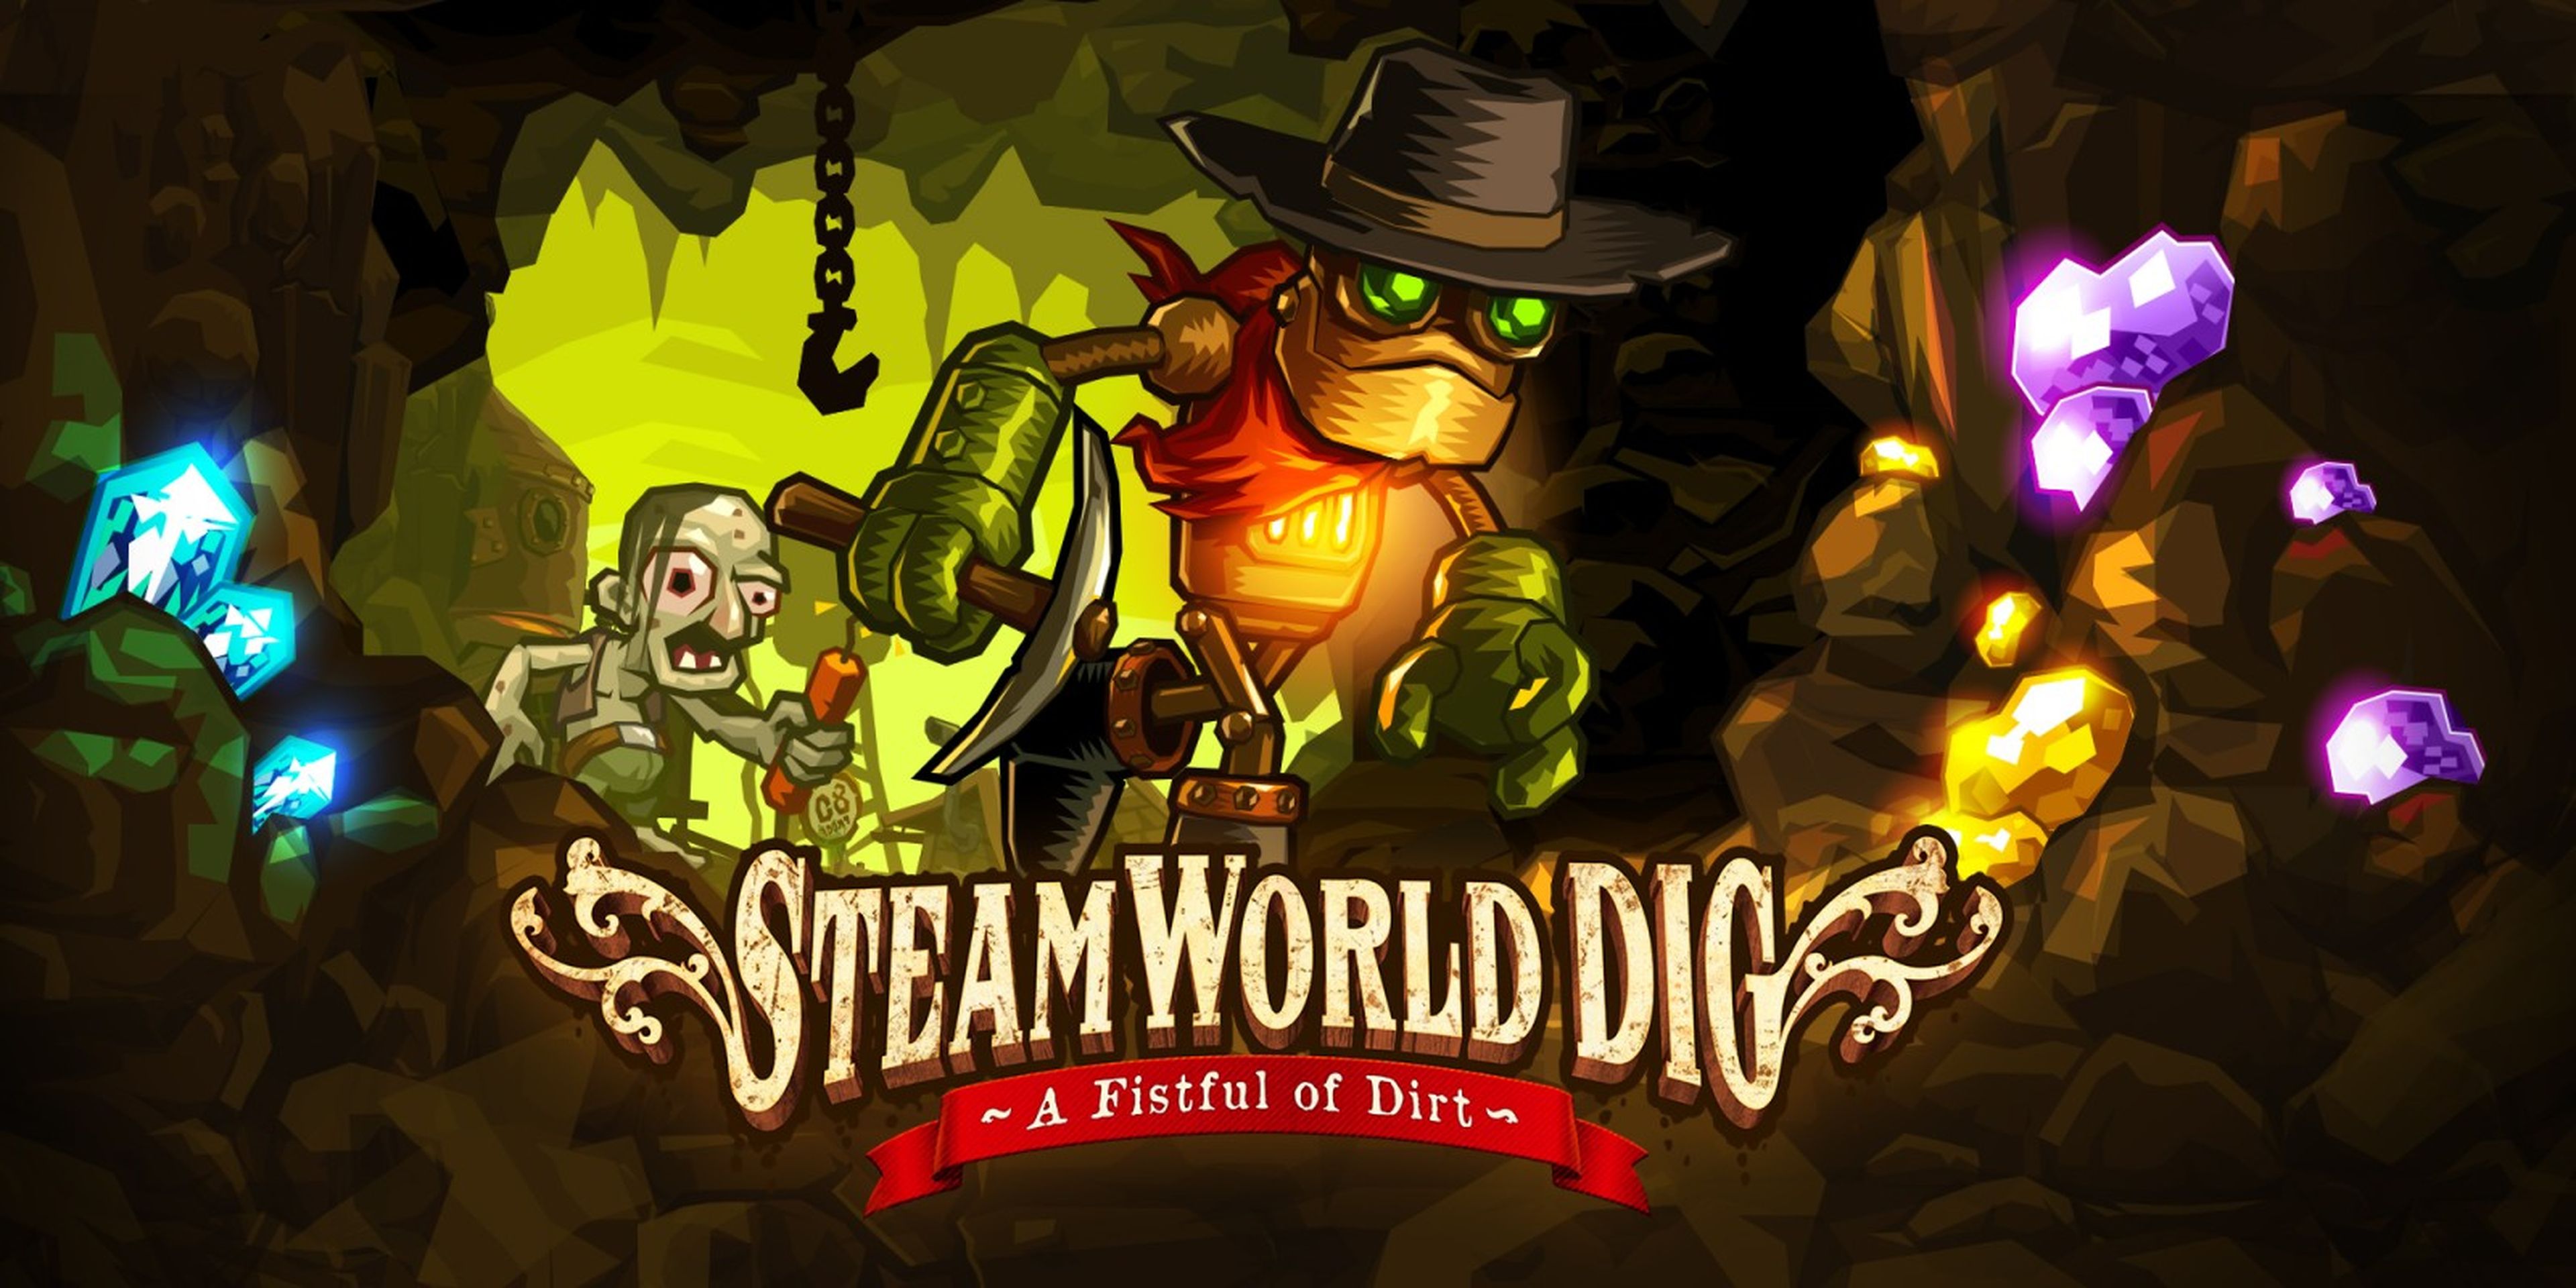 Steam World Dig